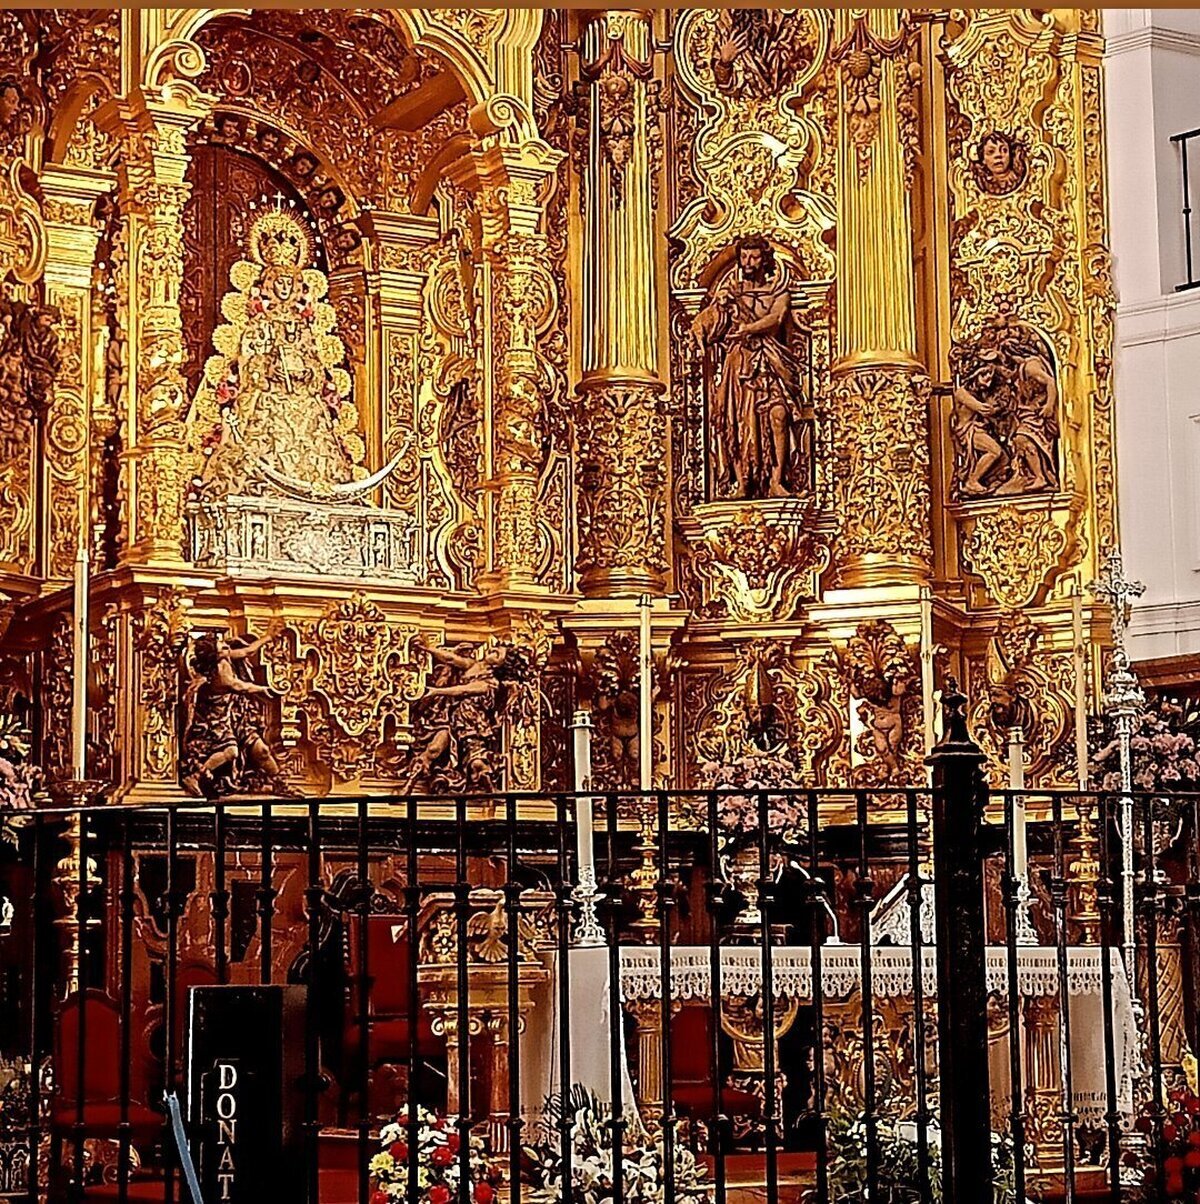 Las romerías y peregrinaciones en España: caminos de fe y devoción